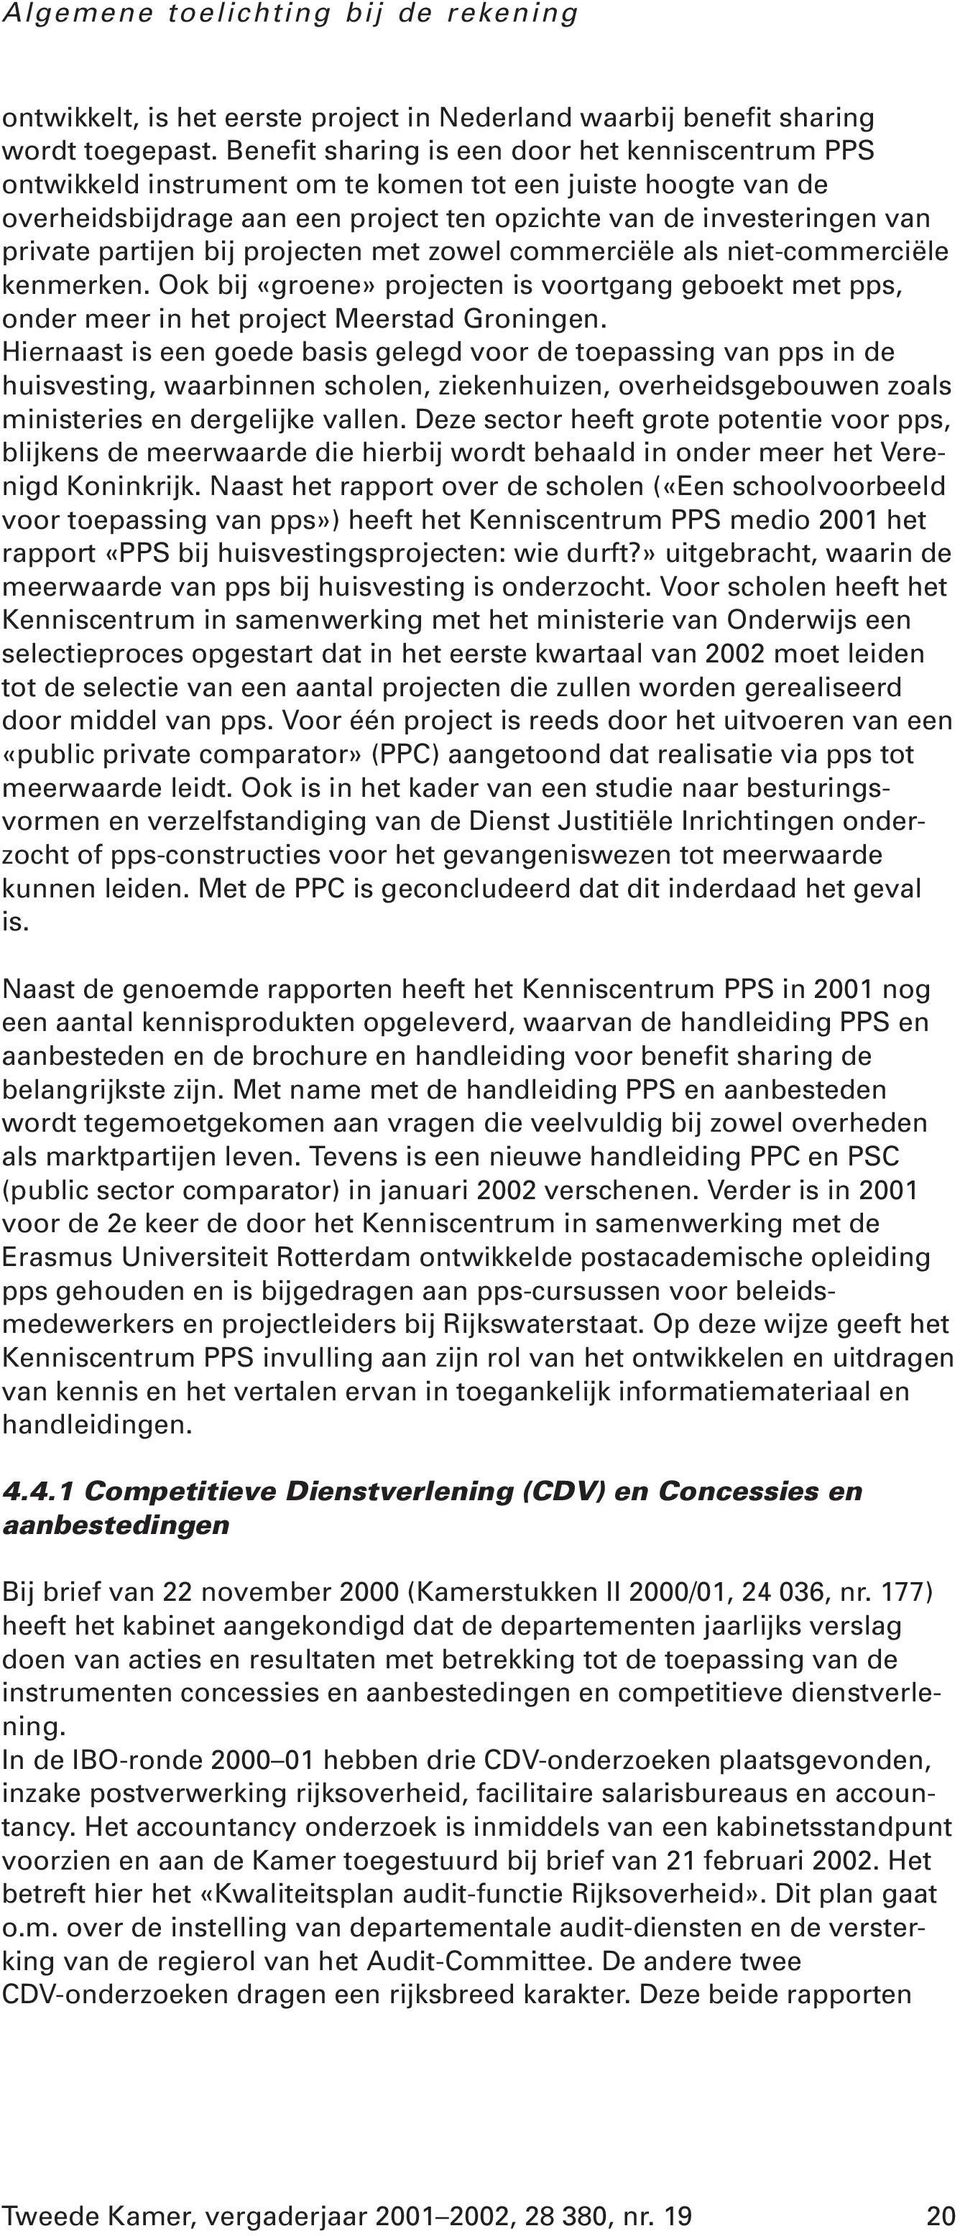 partijen bij projecten met zowel commerciële als niet-commerciële kenmerken. Ook bij «groene» projecten is voortgang geboekt met pps, onder meer in het project Meerstad Groningen.